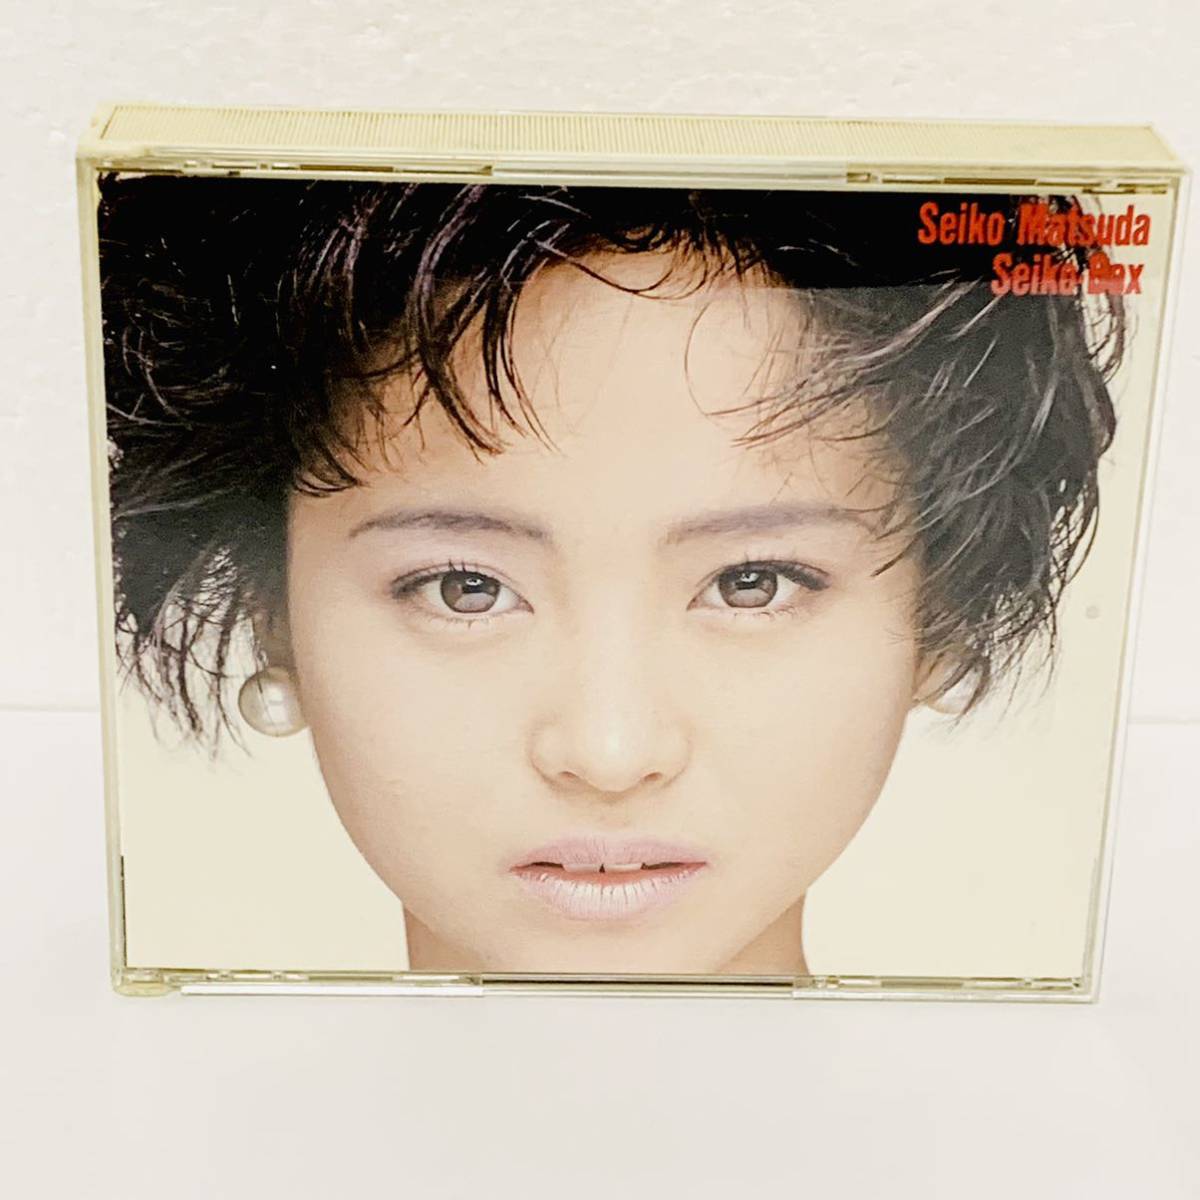 ヤフオク! -「松田聖子 cd box」の落札相場・落札価格